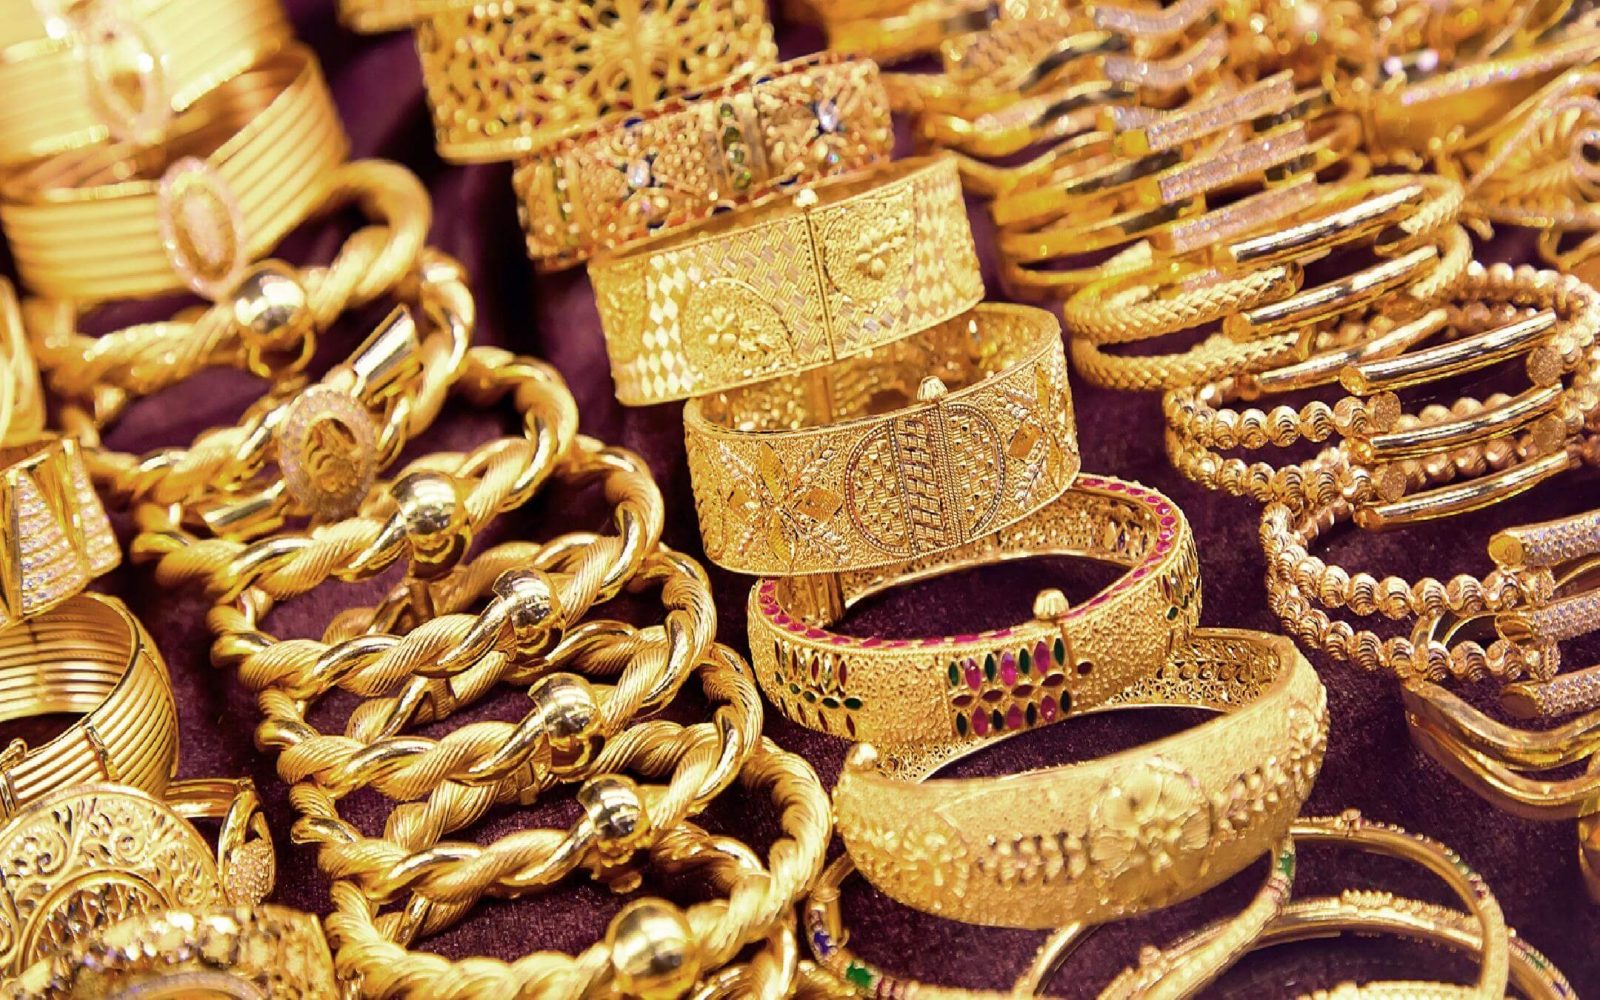 أسعار الذهب اليوم في مصر 20112020 وتراجع عيار 21 جريدة المال